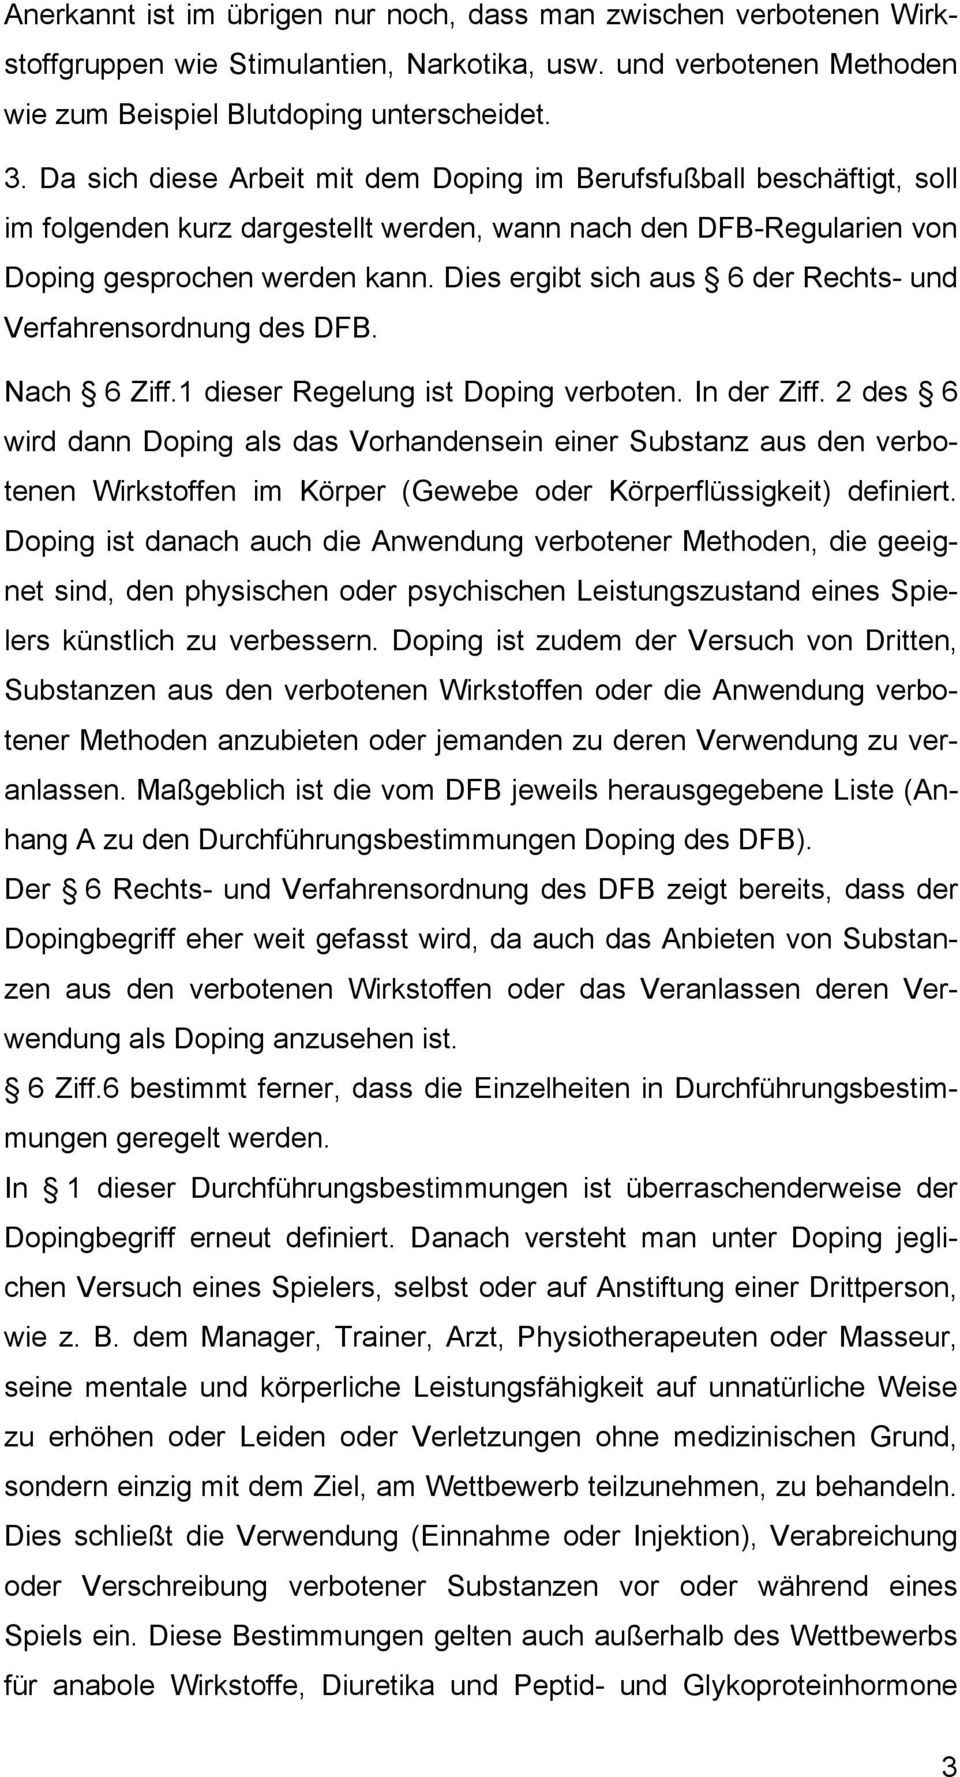 Dies ergibt sich aus 6 der Rechts- und Verfahrensordnung des DFB. Nach 6 Ziff.1 dieser Regelung ist Doping verboten. In der Ziff.